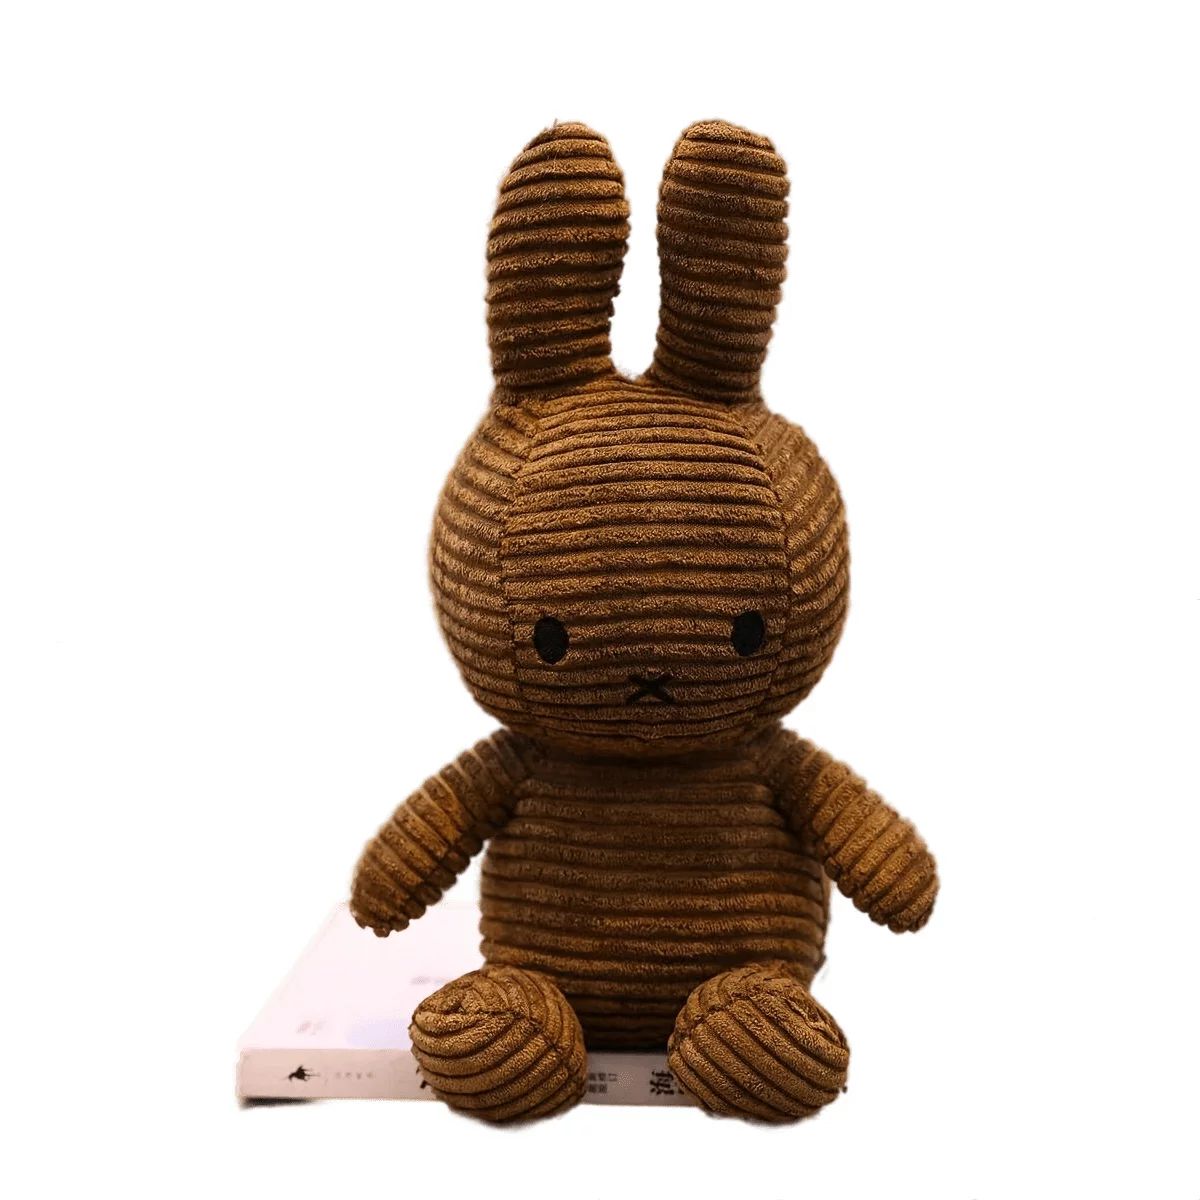 dallergut dream department store the joyfully magical korean bestseller 1 шт. кукла-кролик (9,84 дюйма × 5,12 дюйма) — пасхальный кролик, свадебные принадлежности, подарки для праздничной вечеринки Department Store, синий